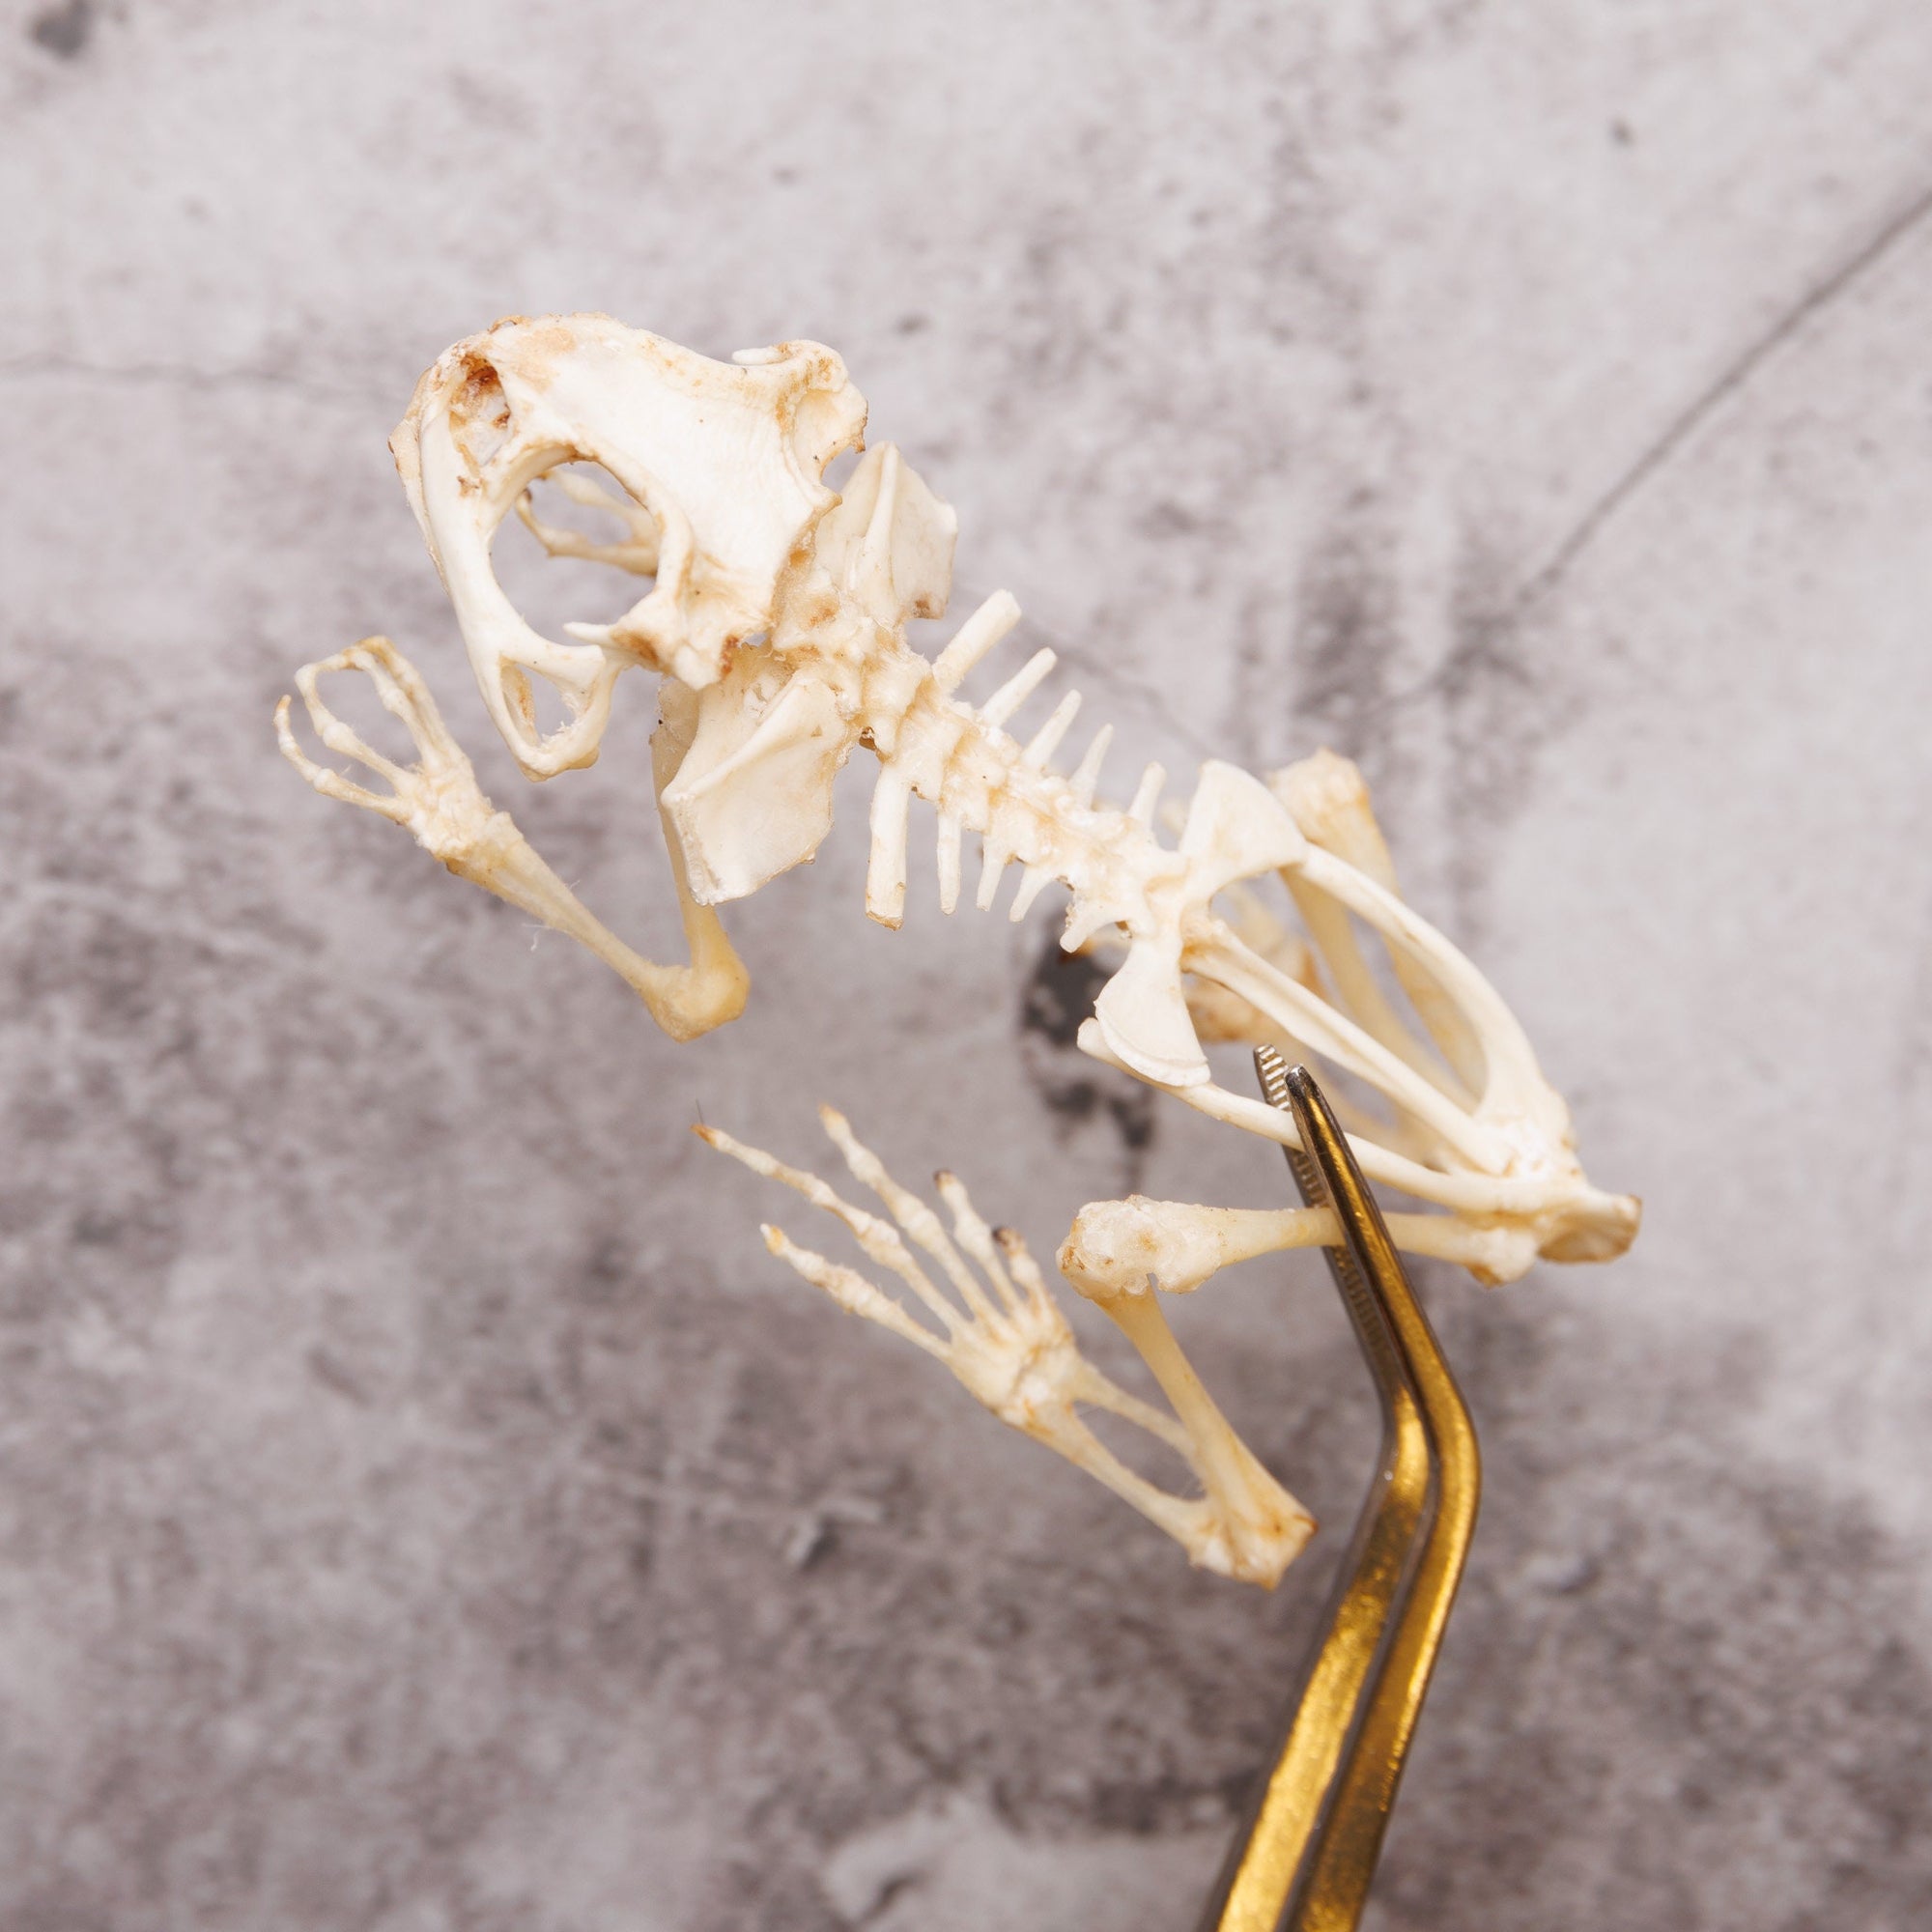 Javanese Toad Skeleton (Duttaphrynus melanosticus) A1 Skeleton Specimen